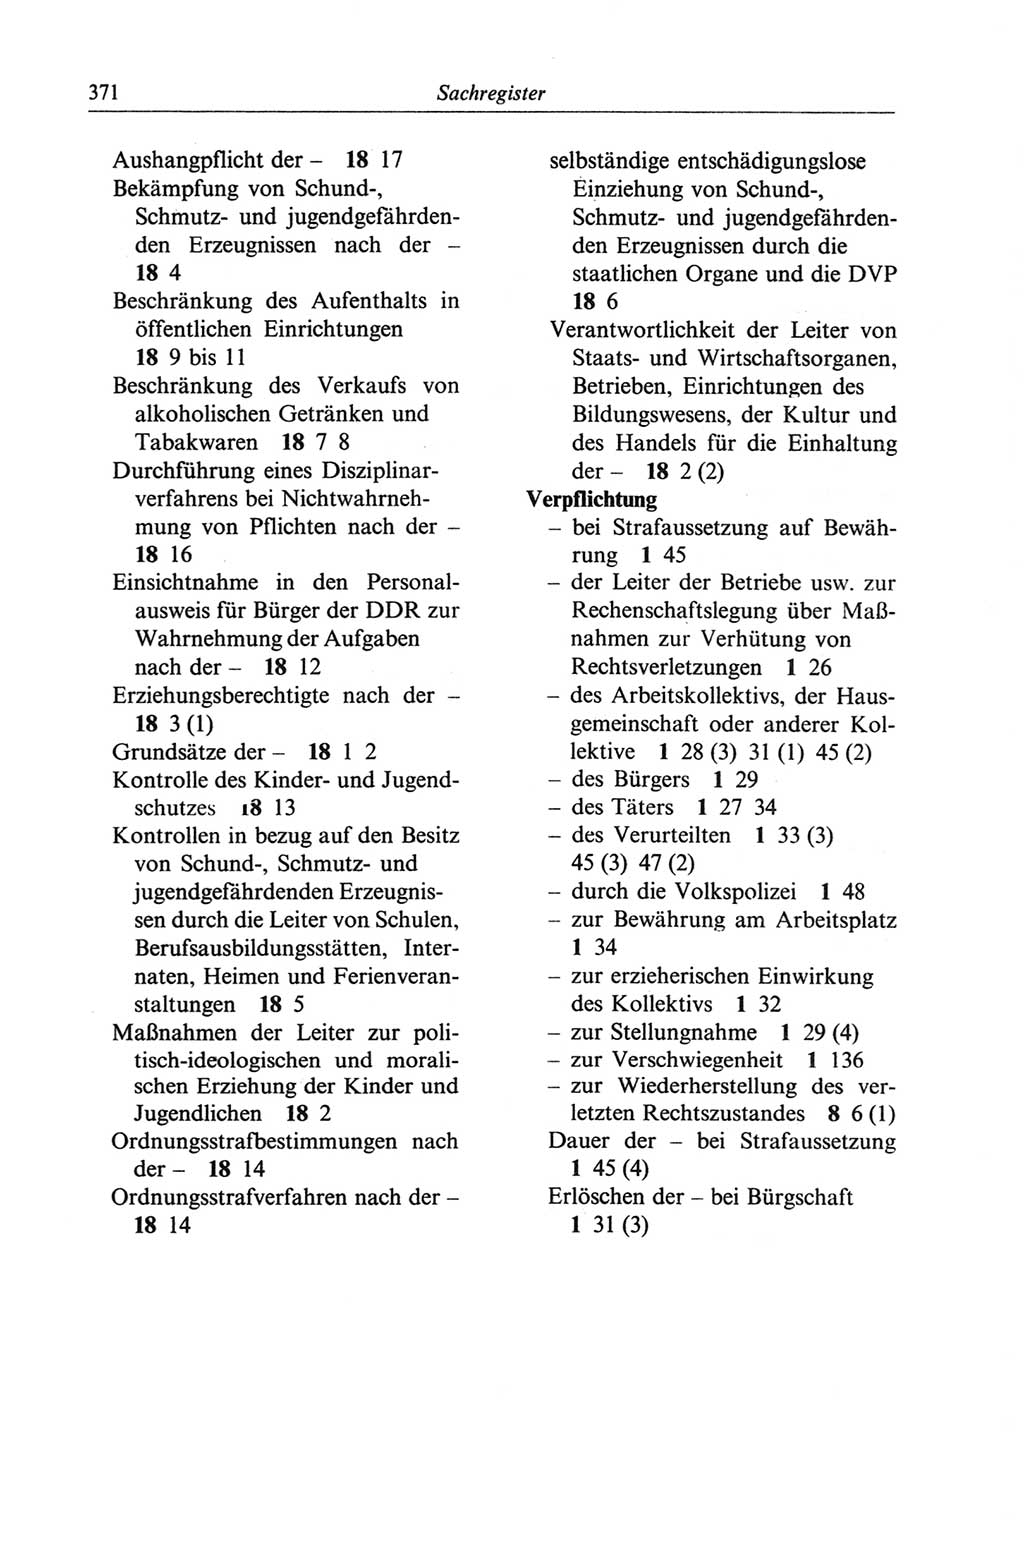 Strafgesetzbuch (StGB) der Deutschen Demokratischen Republik (DDR) und angrenzende Gesetze und Bestimmungen 1968, Seite 371 (StGB Ges. Best. DDR 1968, S. 371)